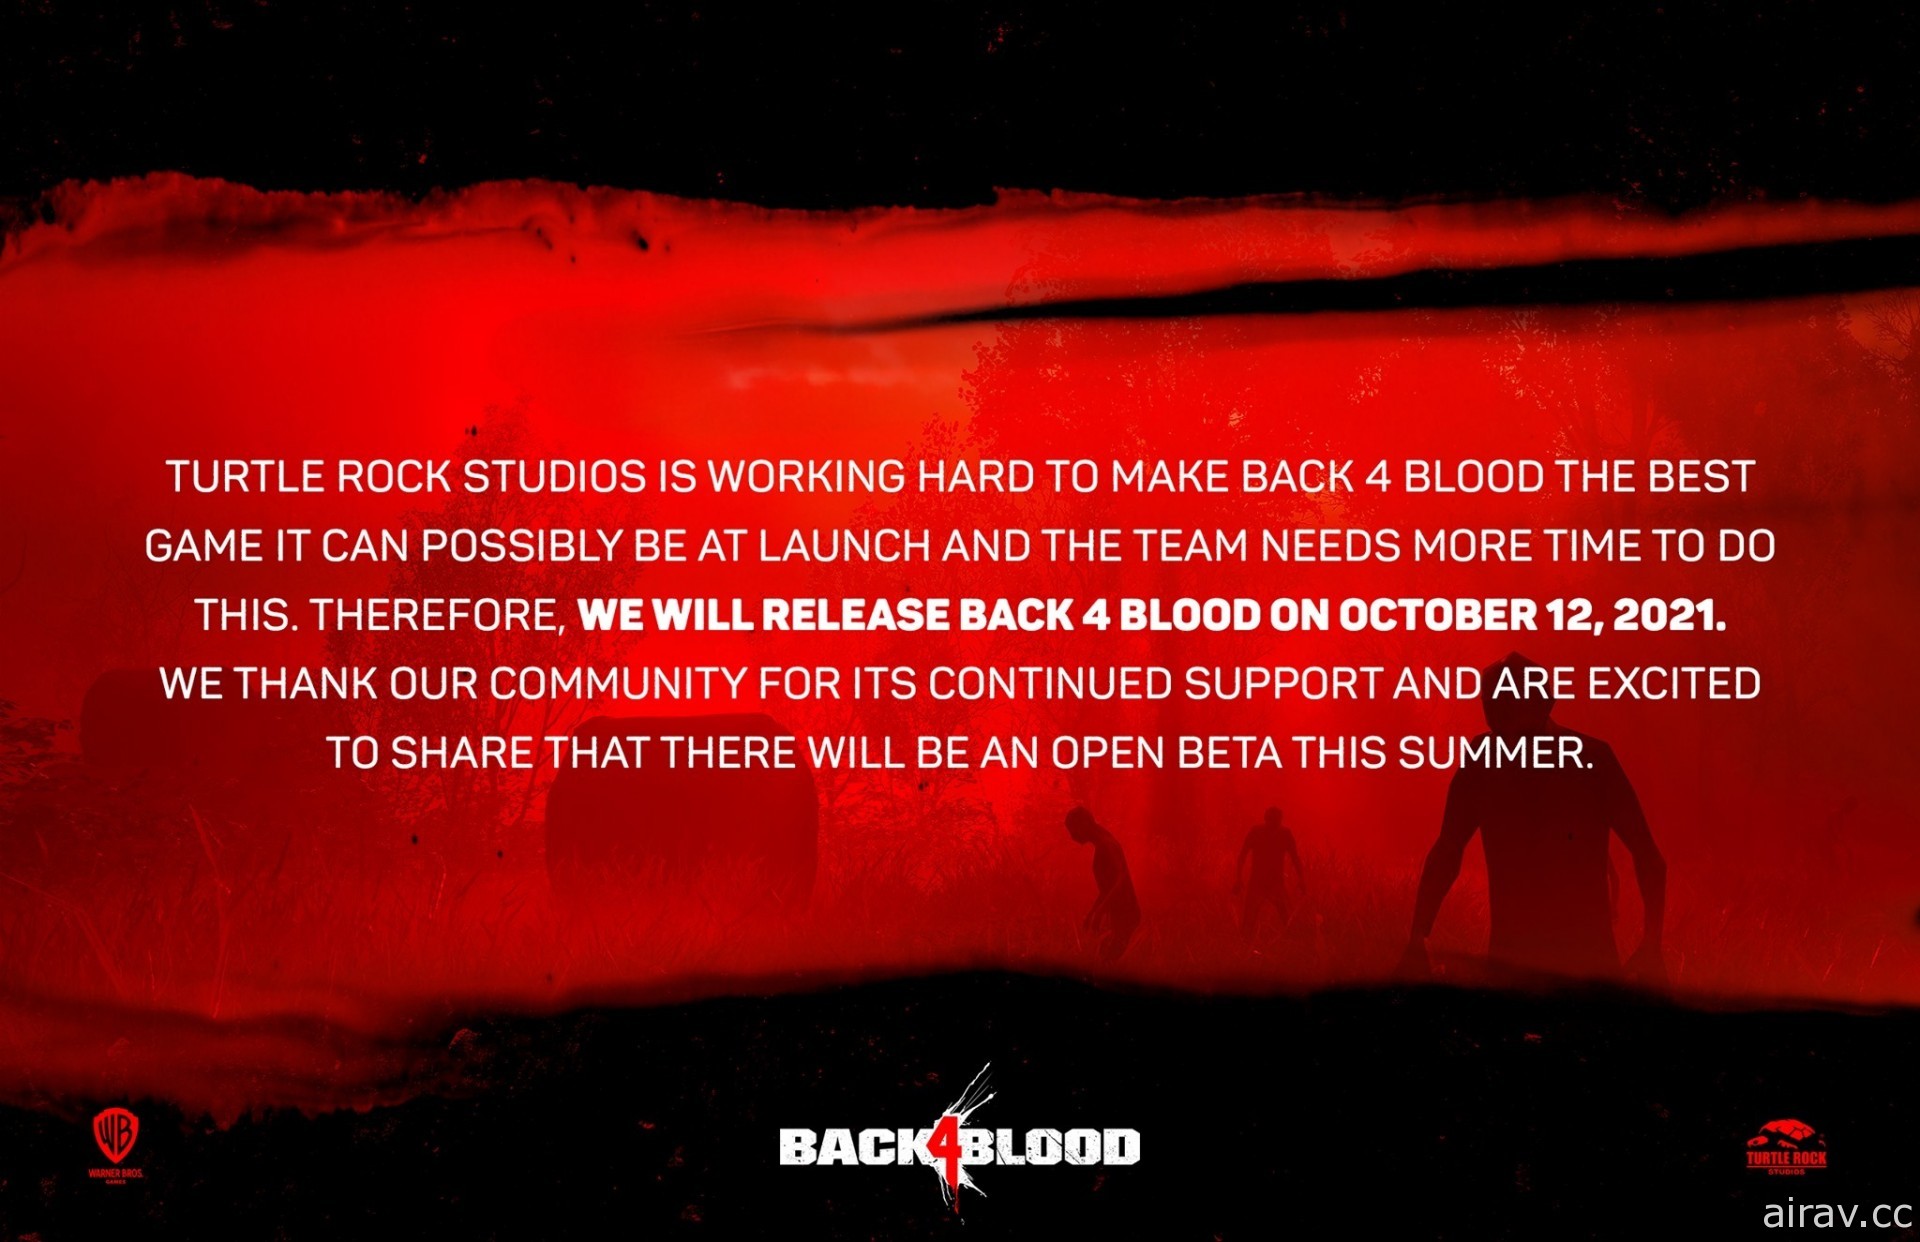 《惡靈勢力》團隊新作《喋血復仇》在 FGS 公開新影片 宣布延期至 10 月上市